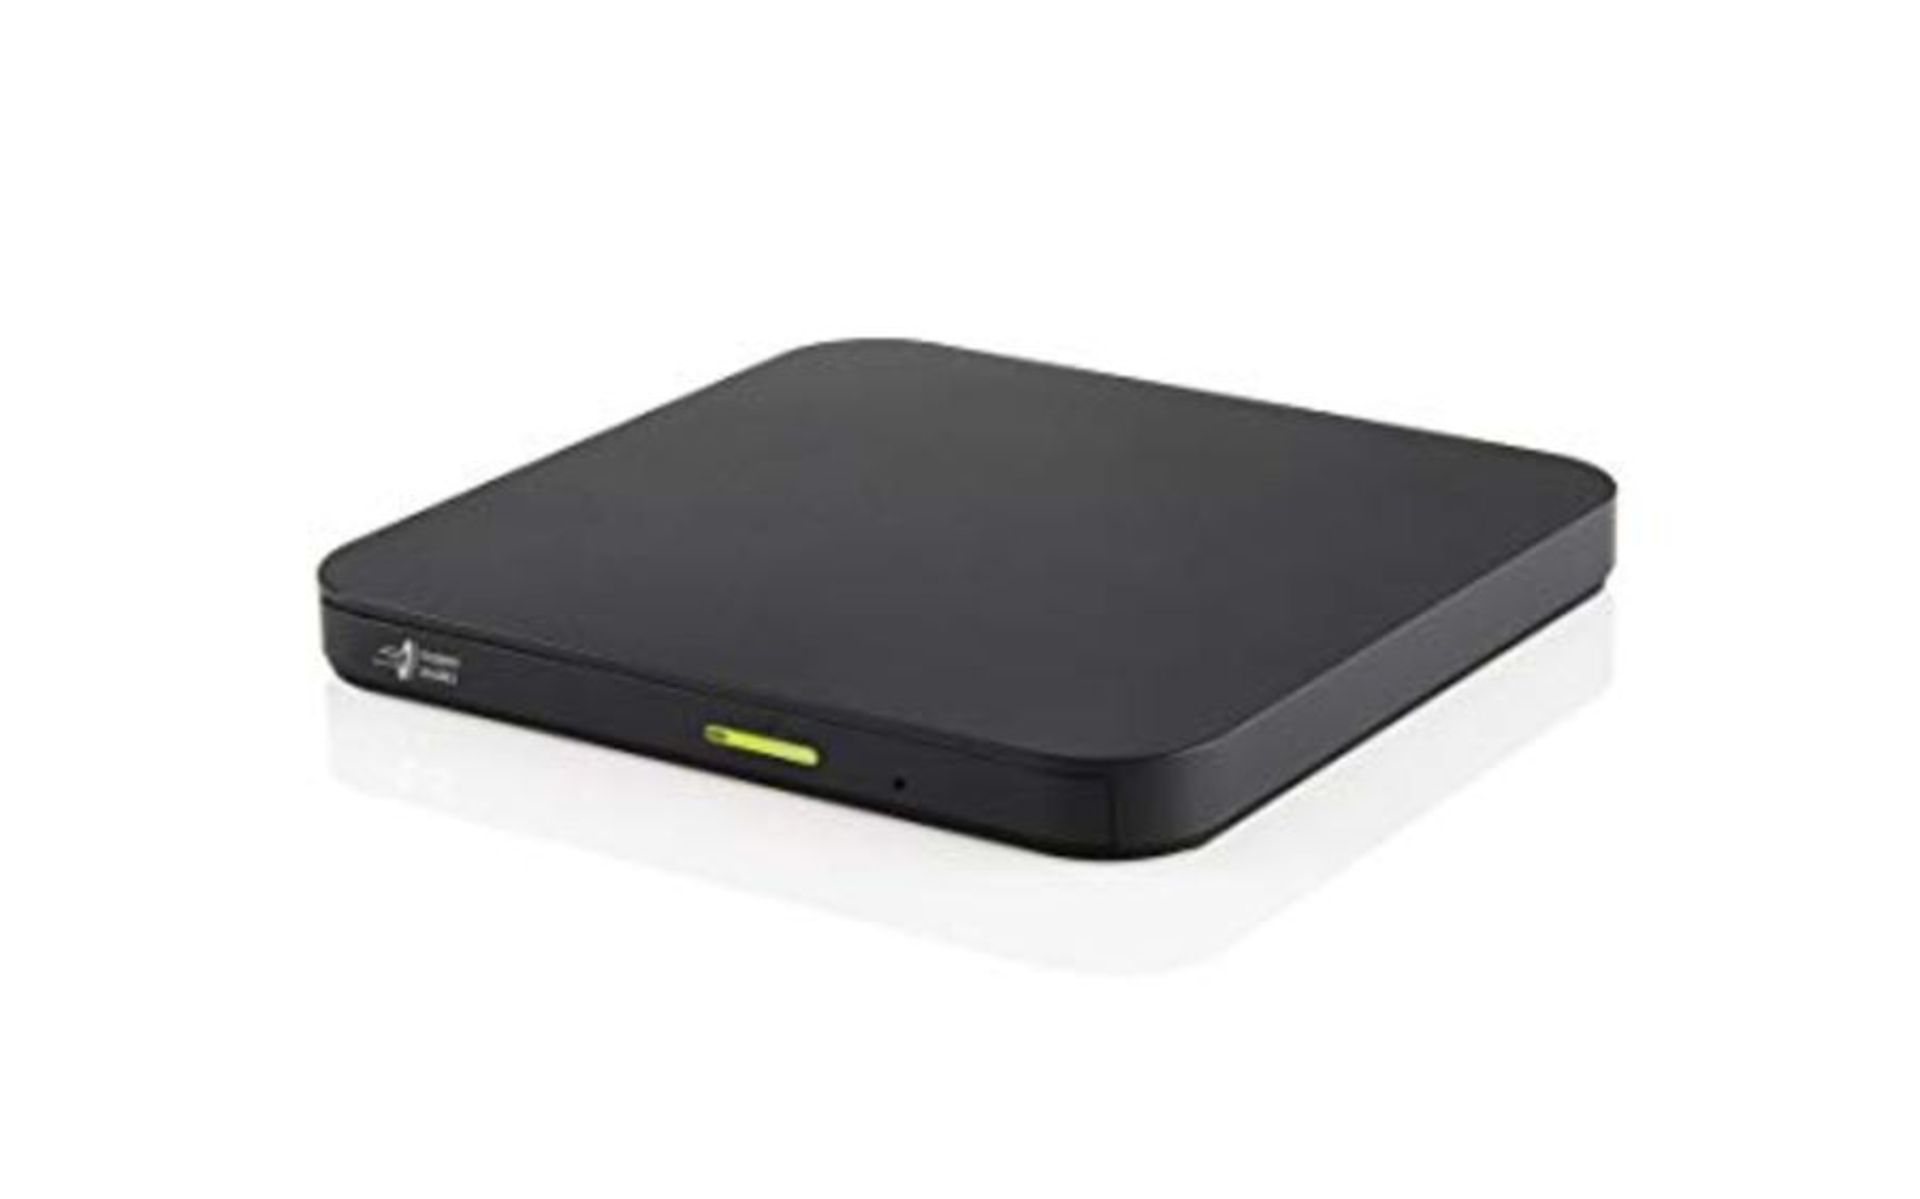 Hitachi-LG GP96 Externes CD/DVD Laufwerk, Portabler Slim Brenner für Smartphone/Table